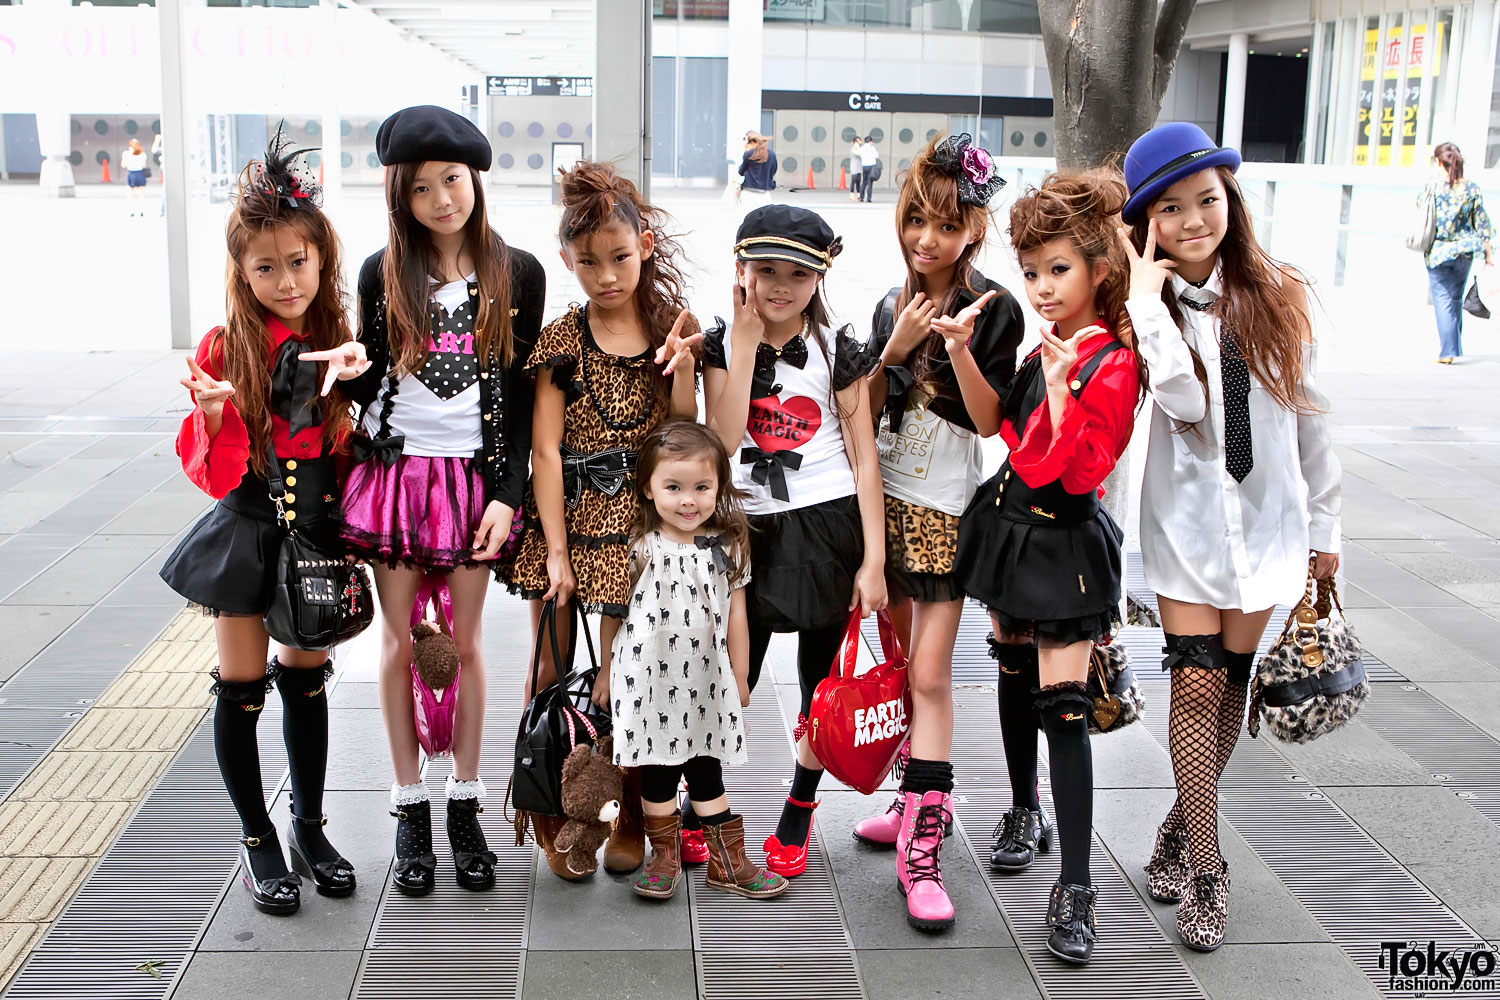 Tokyo Girls Collection Street Fashion - Tokyo Fashion News.